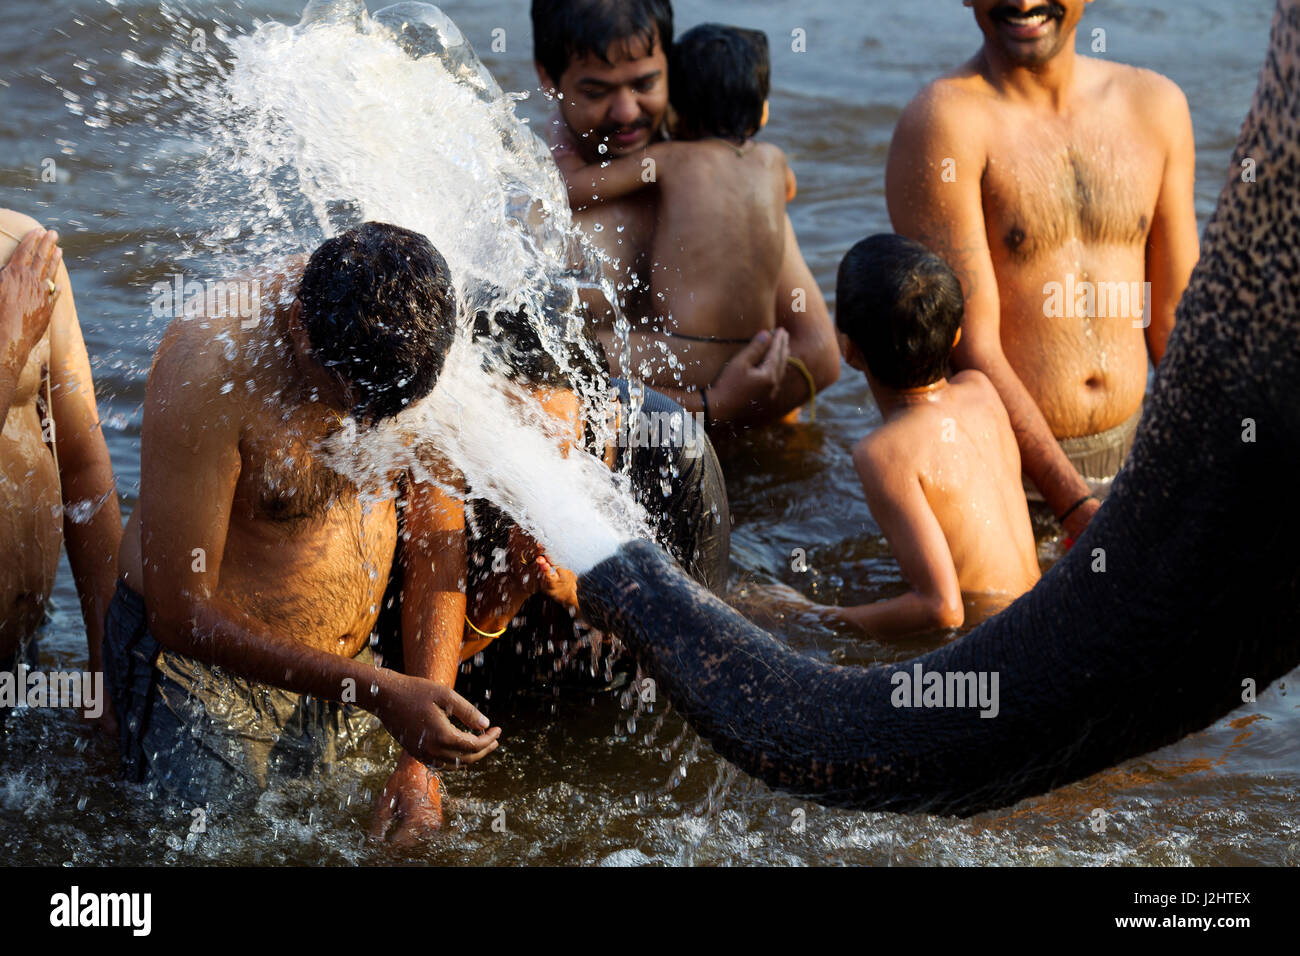 Laxmi elephant bathing people at Tungabhadra river, Hampi, Karnataka, India Stock Photo